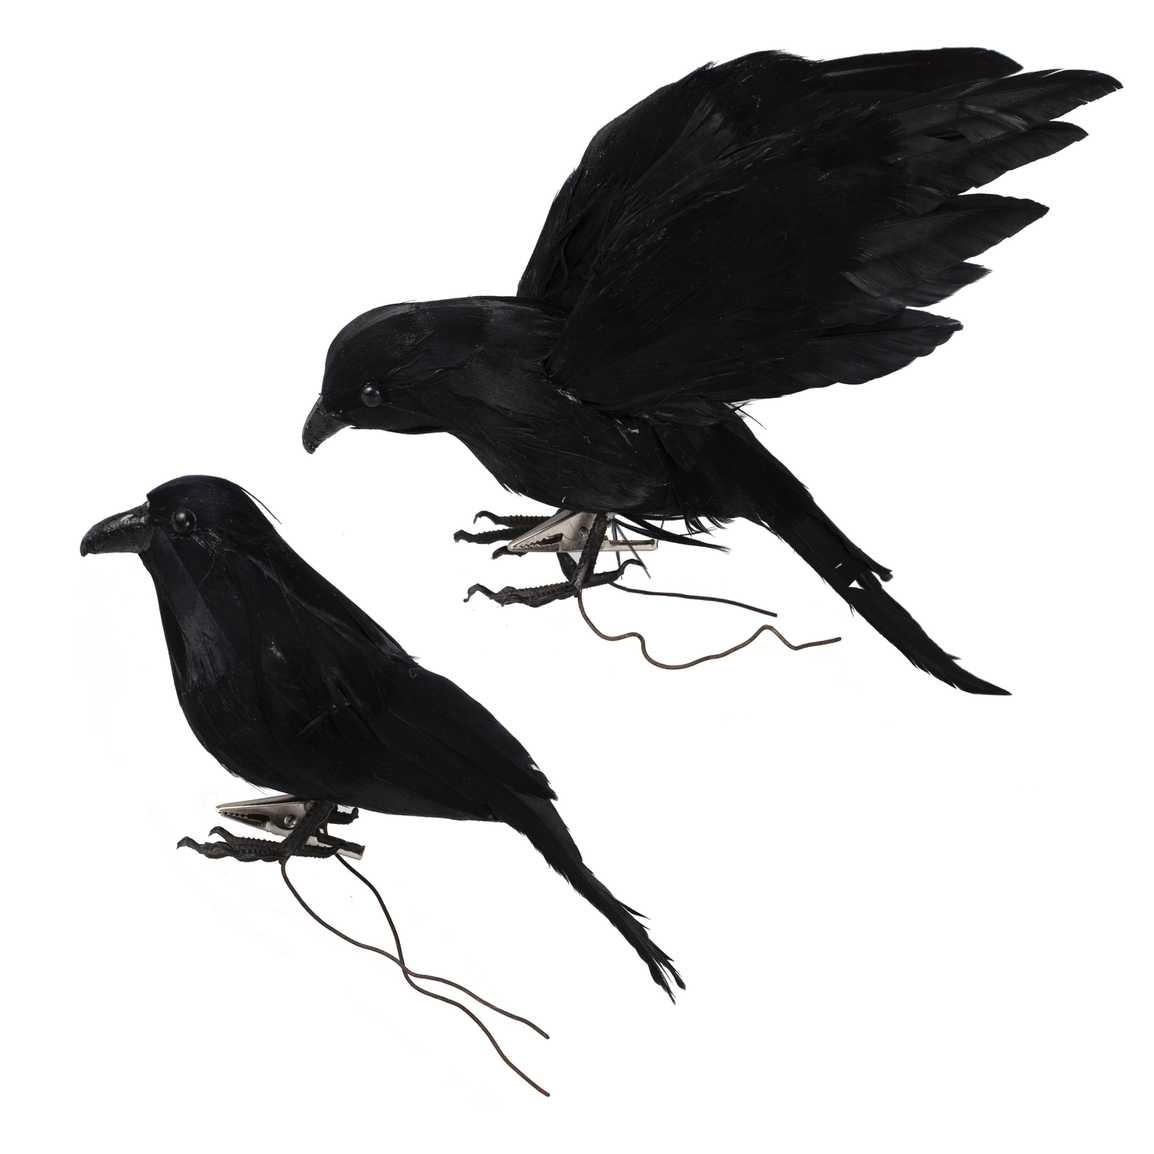 Pair of Black Crows